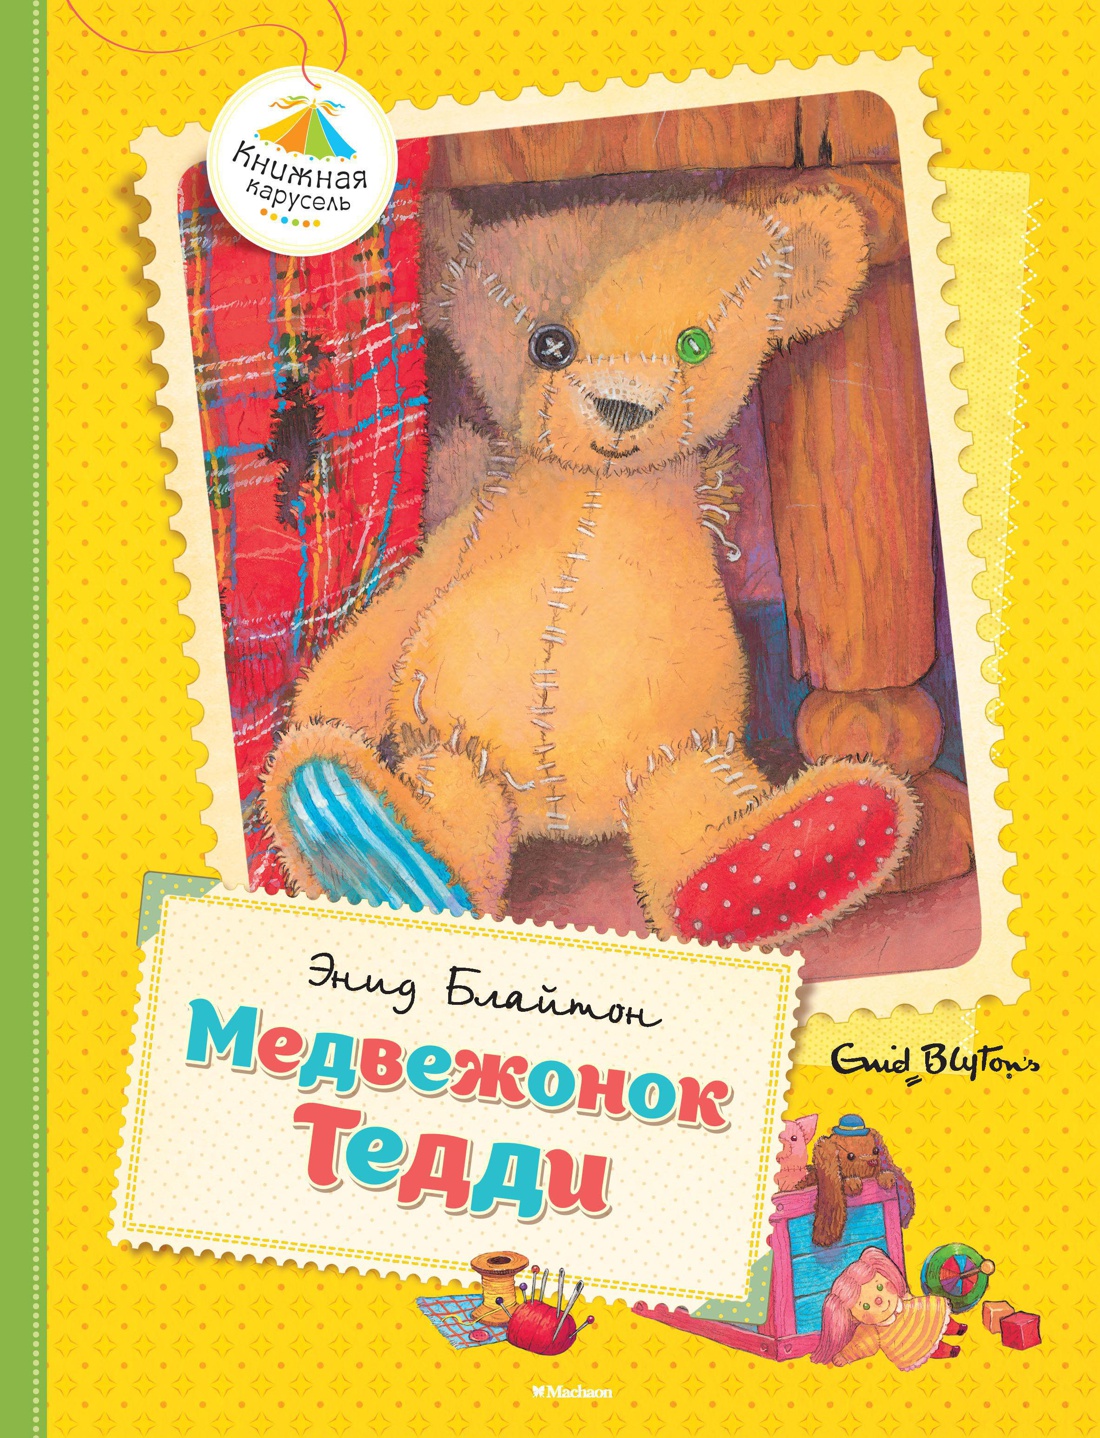 Купить книгу «Медвежонок Тедди», Энид Блайтон